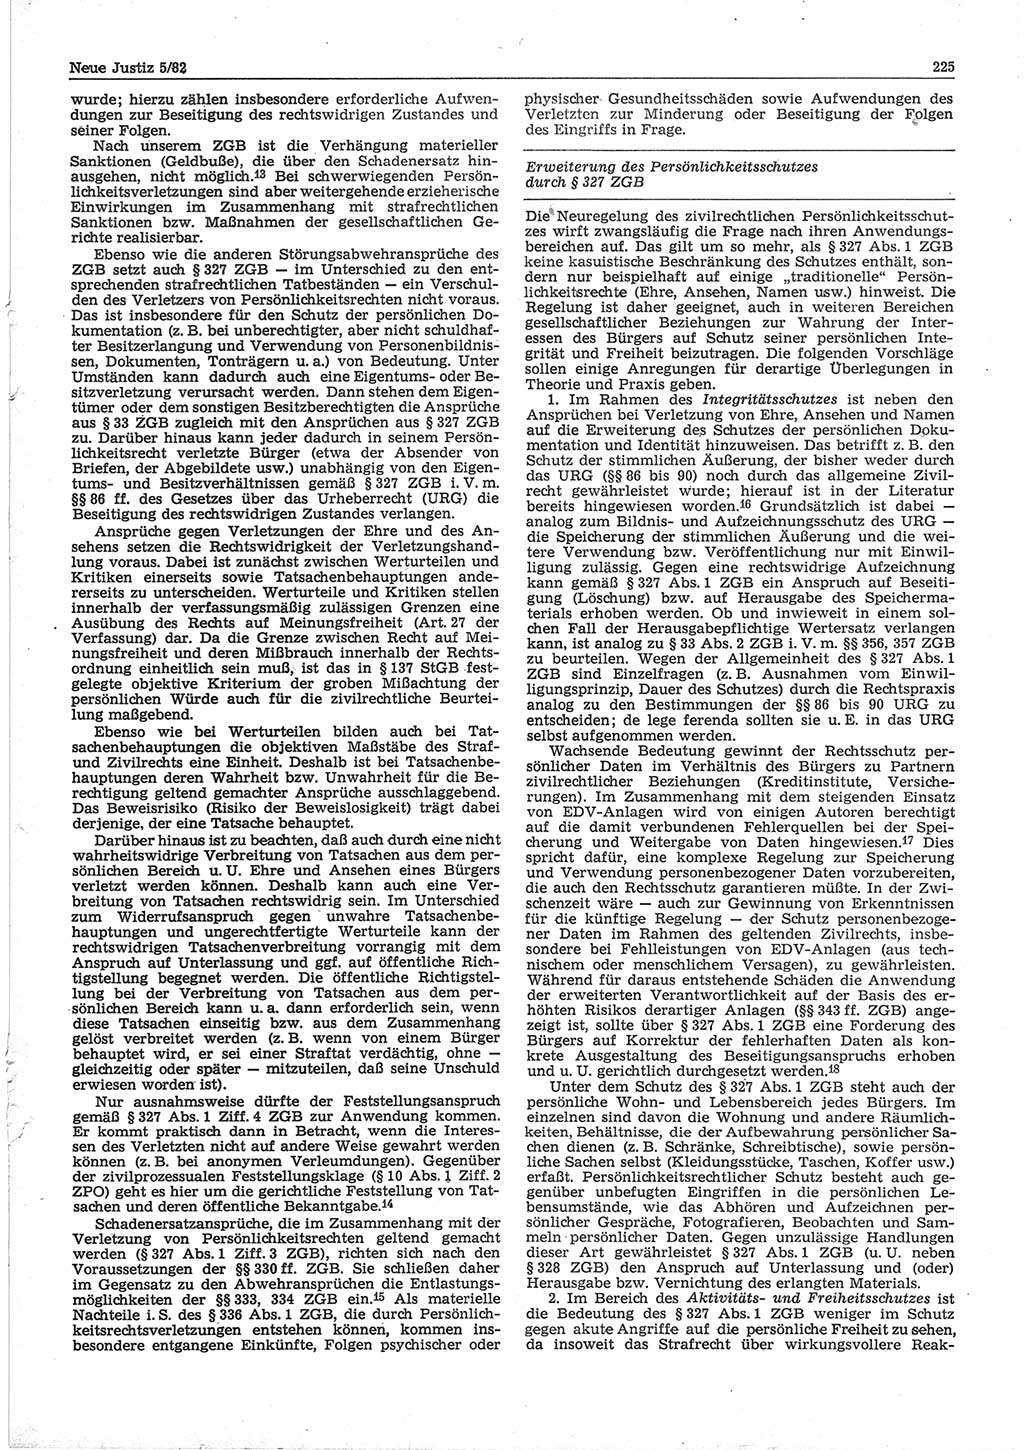 Neue Justiz (NJ), Zeitschrift für sozialistisches Recht und Gesetzlichkeit [Deutsche Demokratische Republik (DDR)], 36. Jahrgang 1982, Seite 225 (NJ DDR 1982, S. 225)